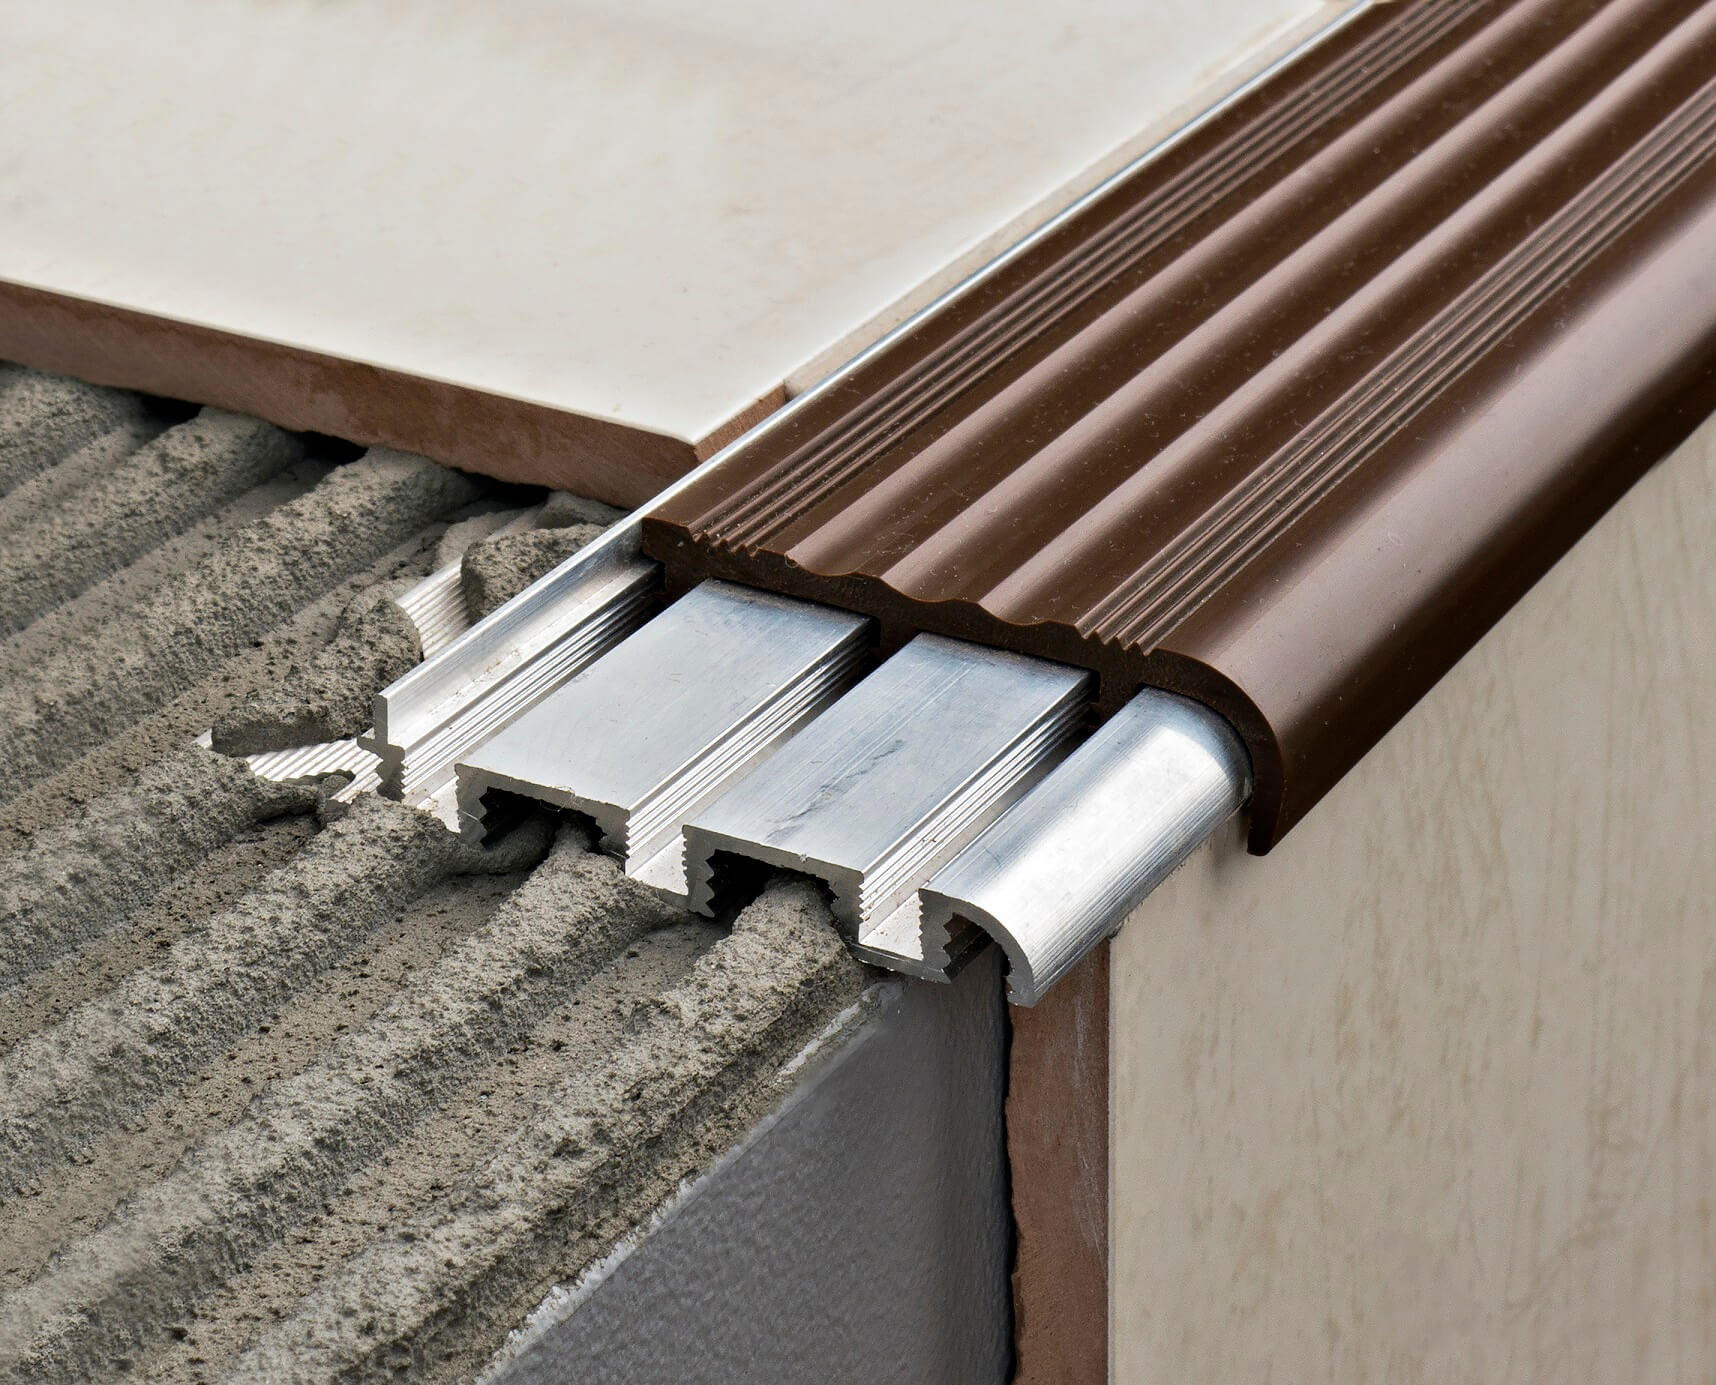 profil schodowy aluminiowy z szerokoą nakładką pcv brązową